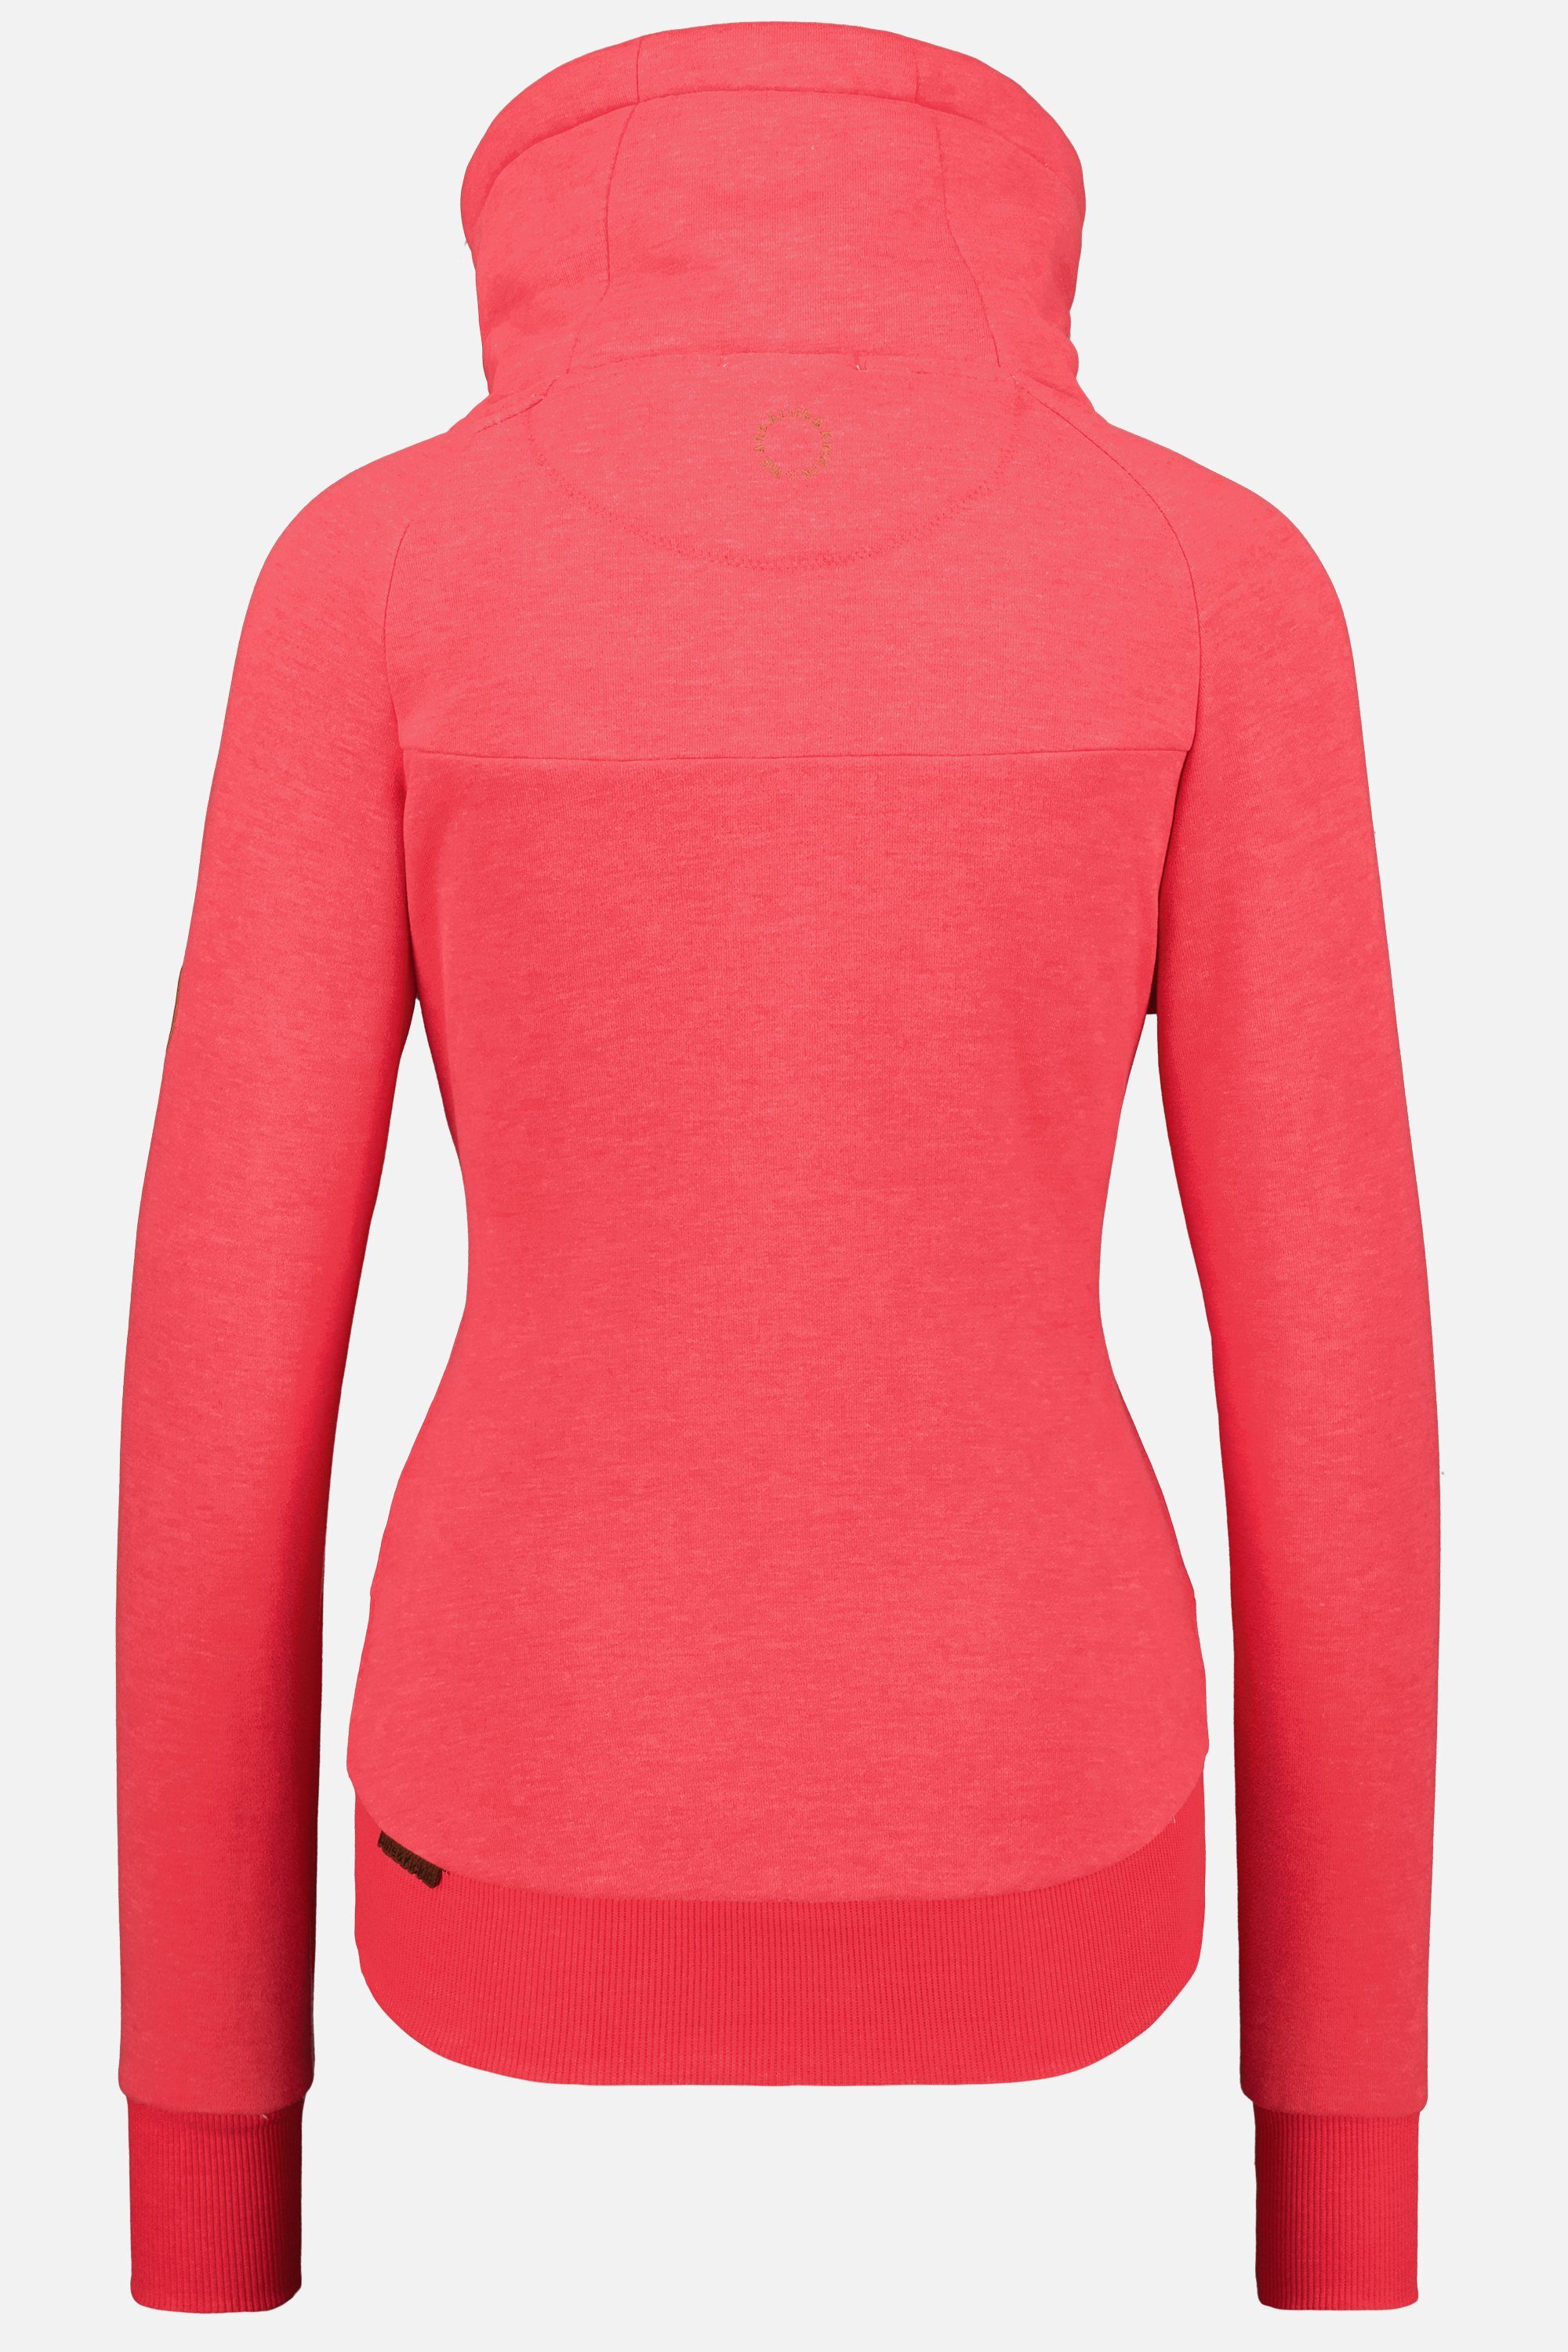 Alife & Sweatshirt Damen melange Sweatshirt Kickin VioletAK A Pullover coral Rundhalspullover